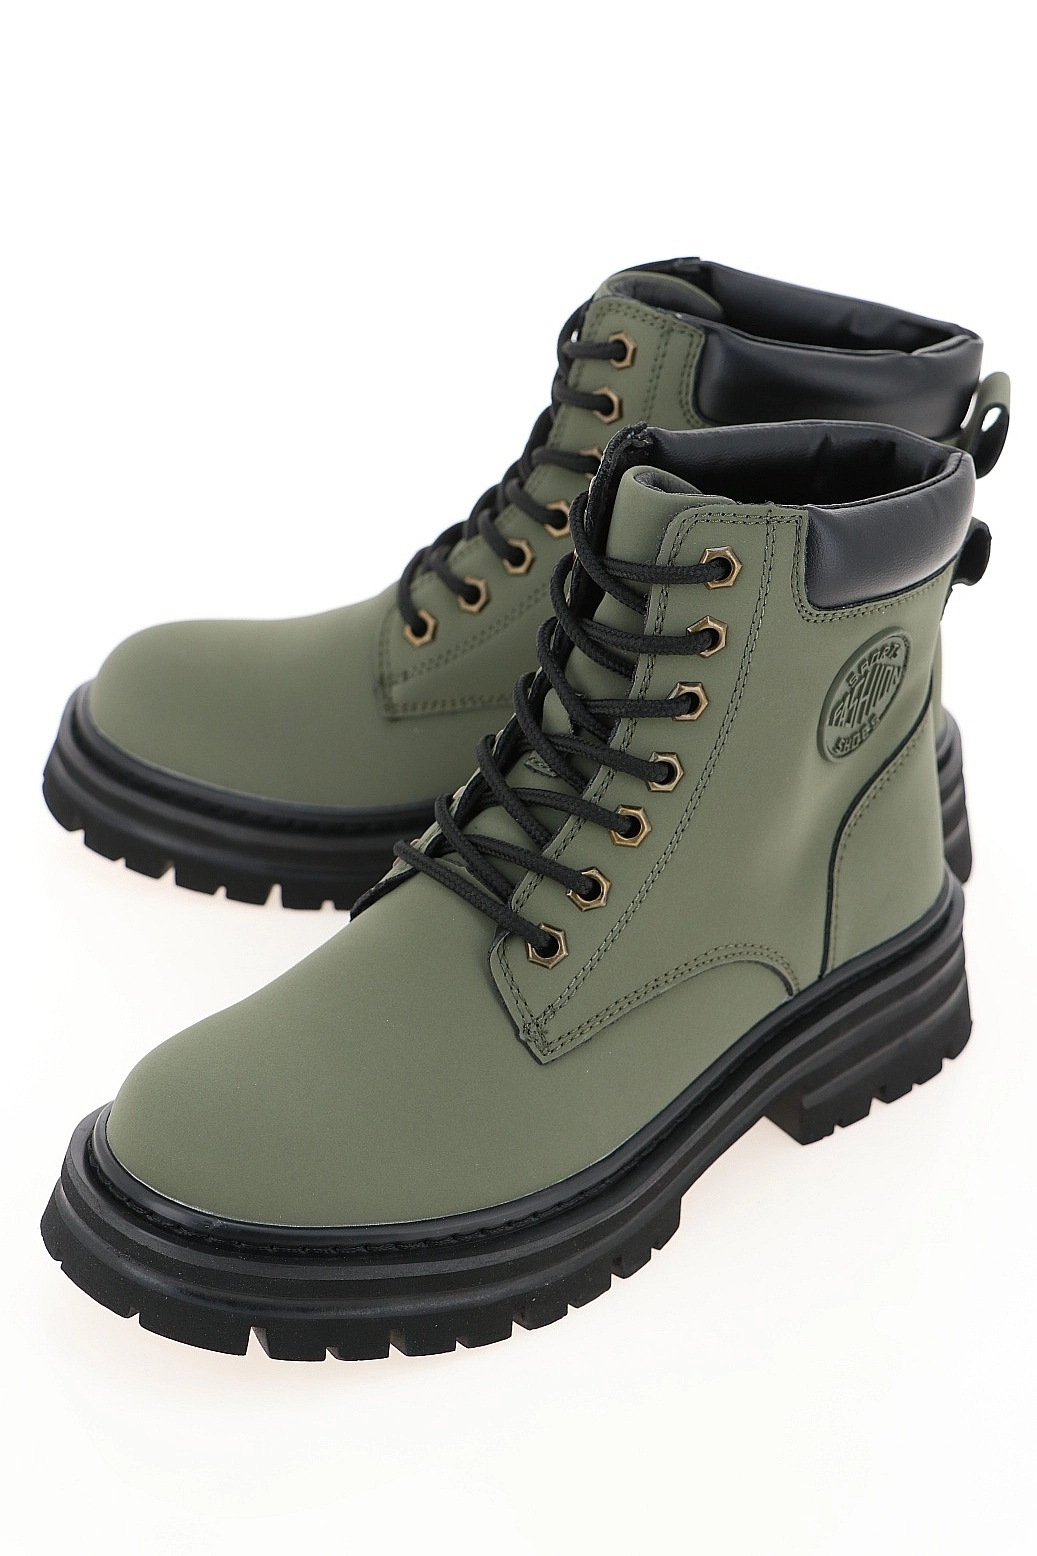 Ботинки Tofa зеленые 604715-6 купить в Екатеринбурге за 5990 руб